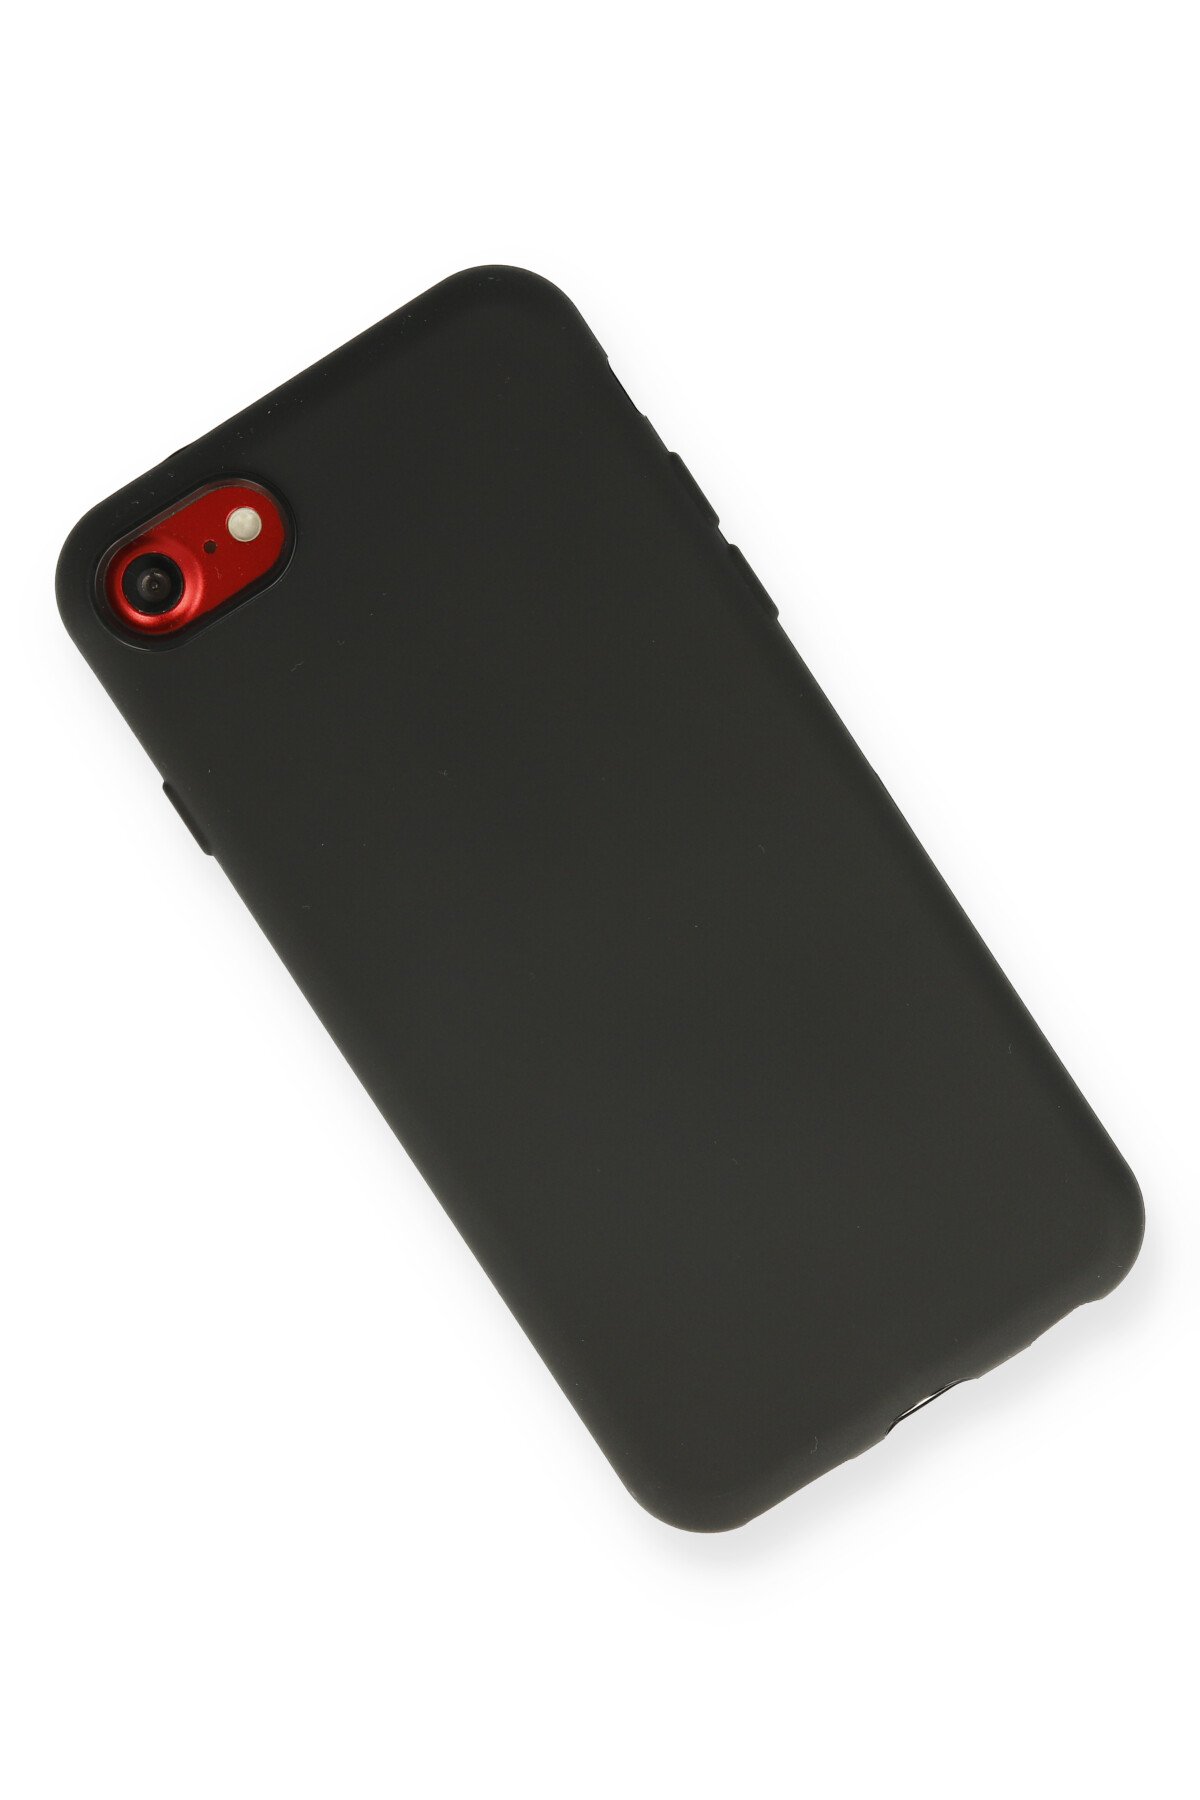 Newface iPhone SE 2020 Kılıf Montreal Yüzüklü Silikon Kapak - Kırmızı